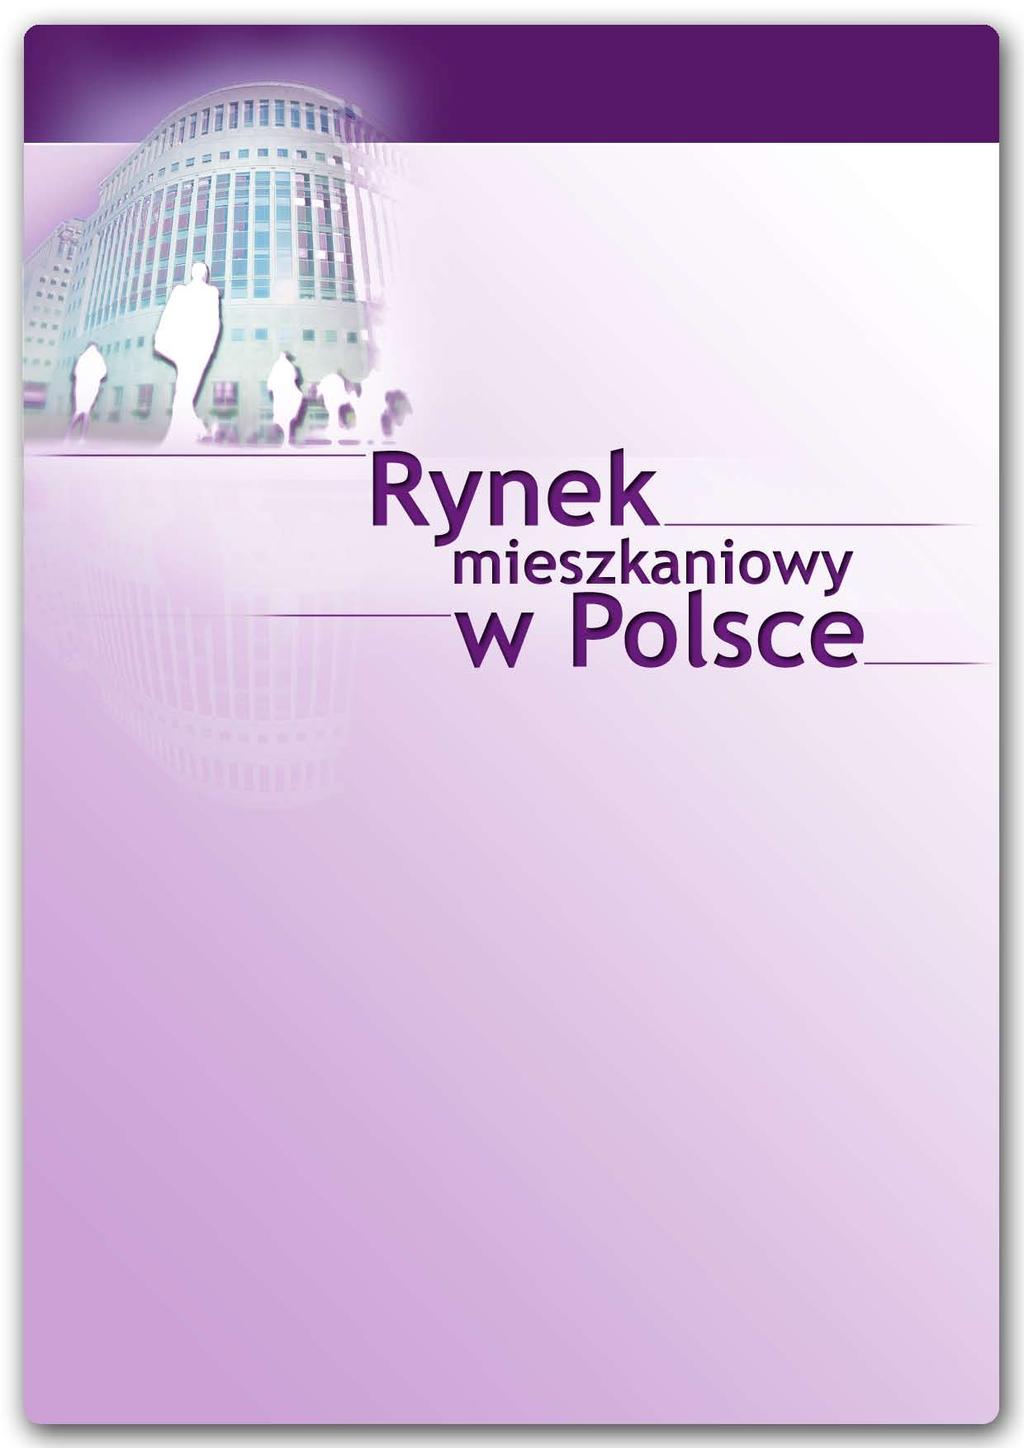 Raport rednet Consulting i tabelaofert.pl sytuacja na rynku mieszkaniowym Styczeń 2012 rednet Property Group Sp. z o.o. z siedzibą przy ul.